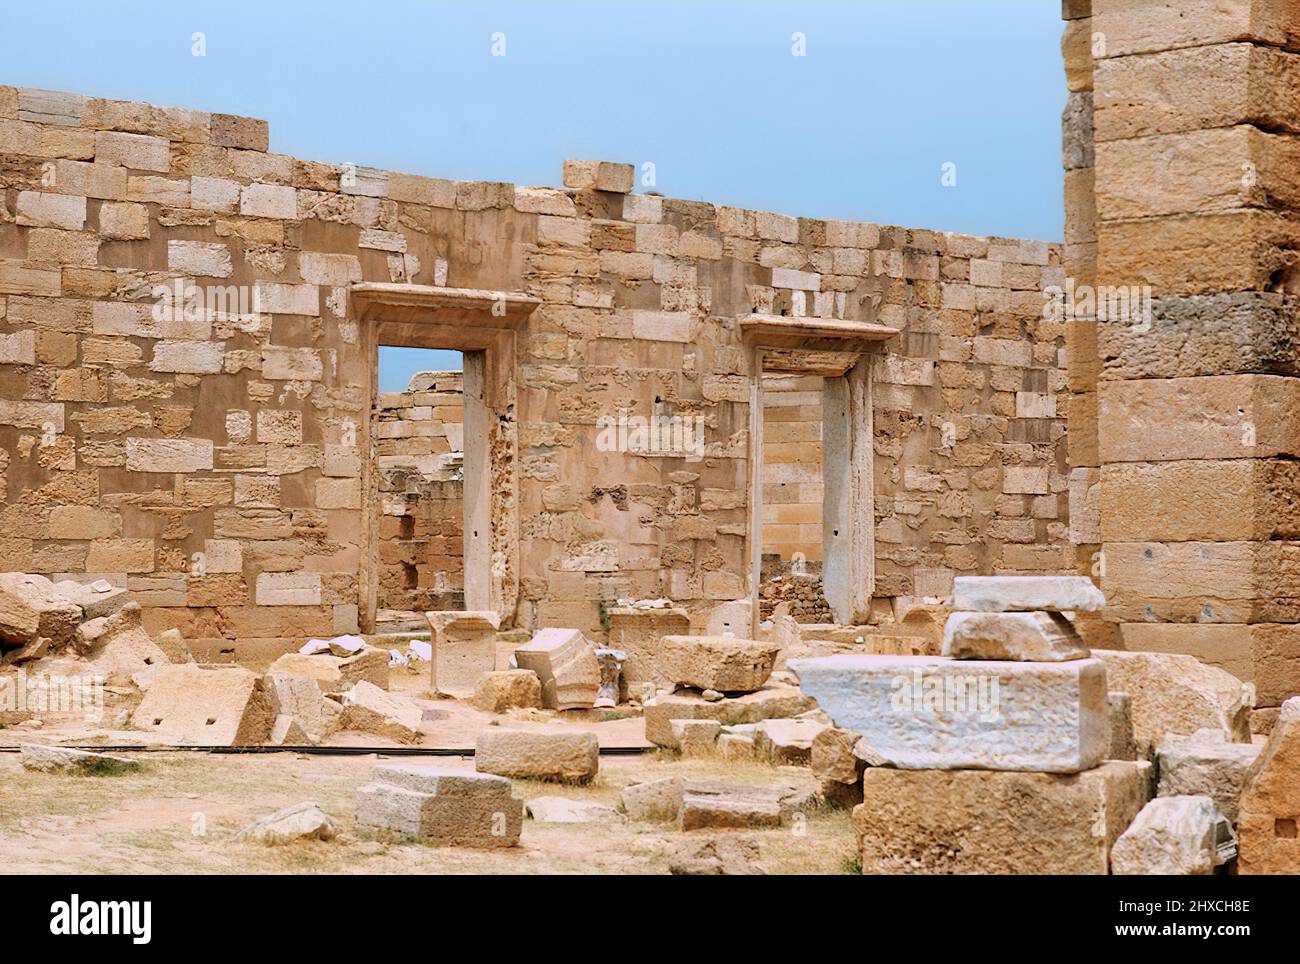 Ruines romaines historiques de Laptis Magna en Libye Banque D'Images